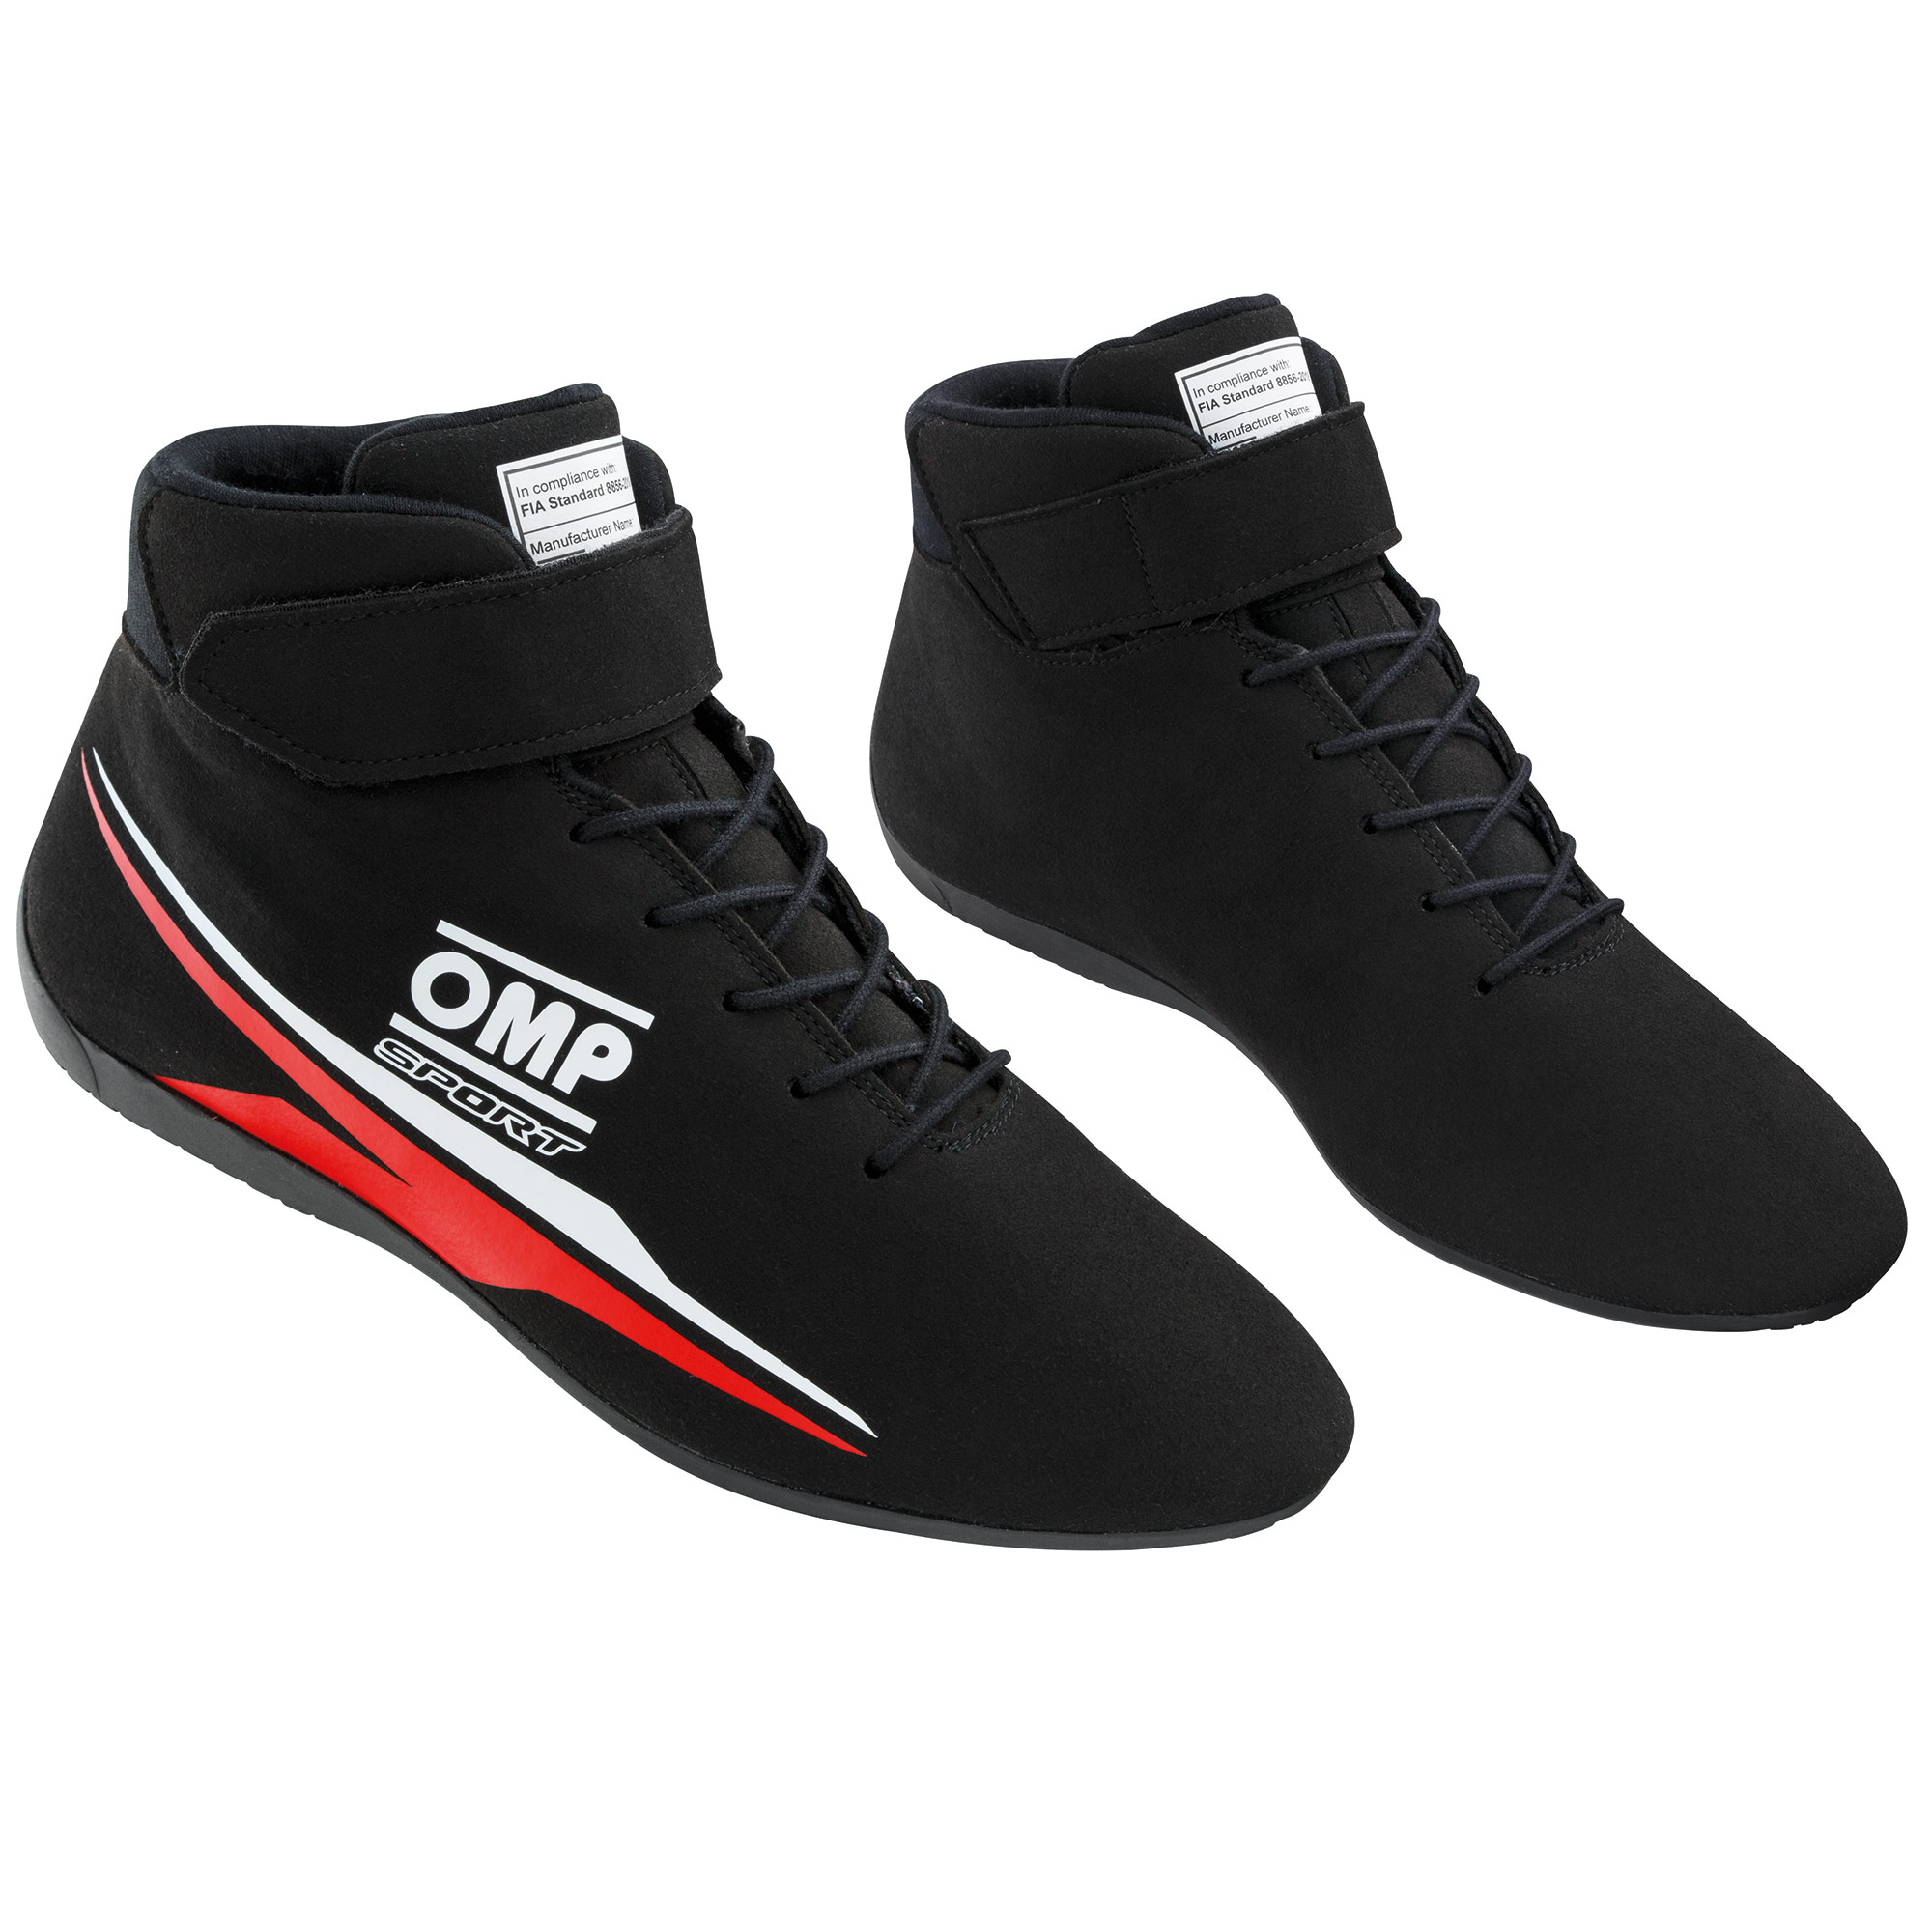 OMP Sport Course Bottes//Chaussures-FIA 8856-2018 Approuvé